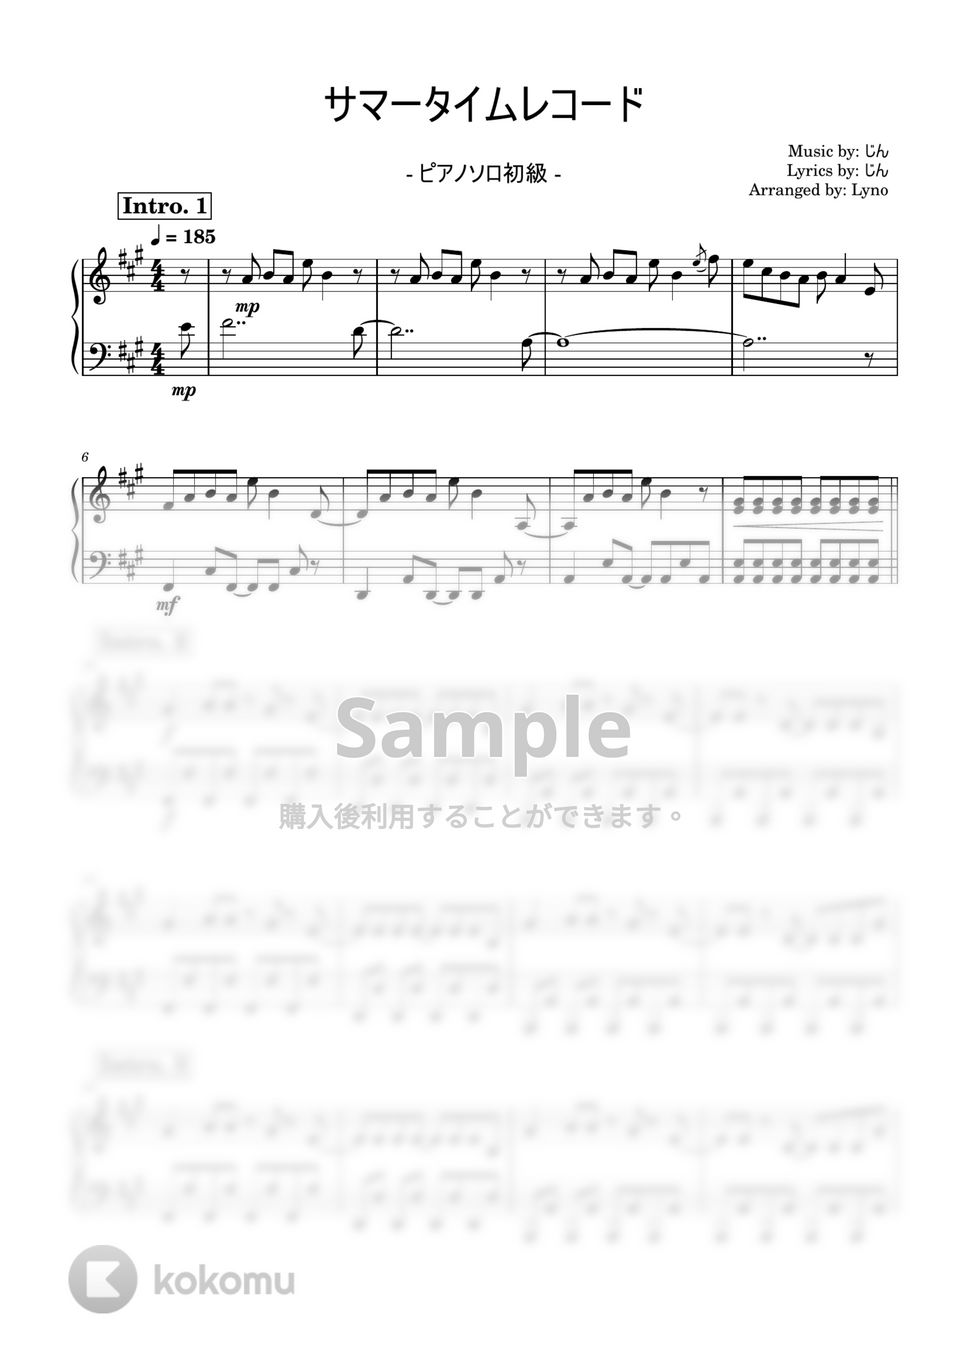 じん - サマータイムレコード (ピアノソロ初級) by Ray